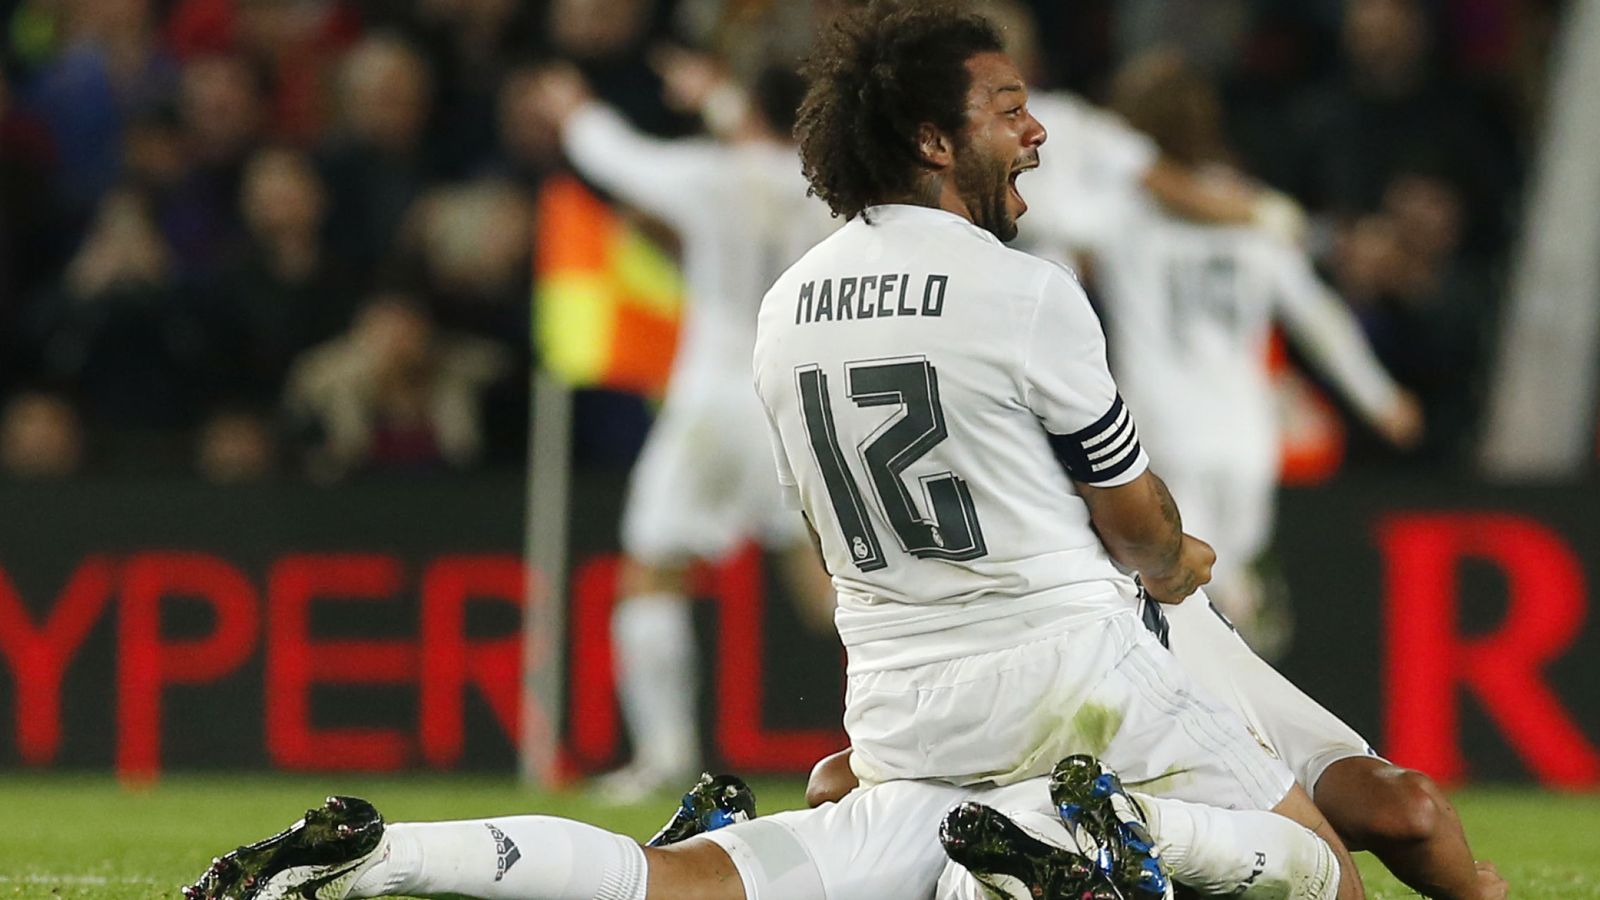 Foto: Marcelo celebra el gol marcado por Cristiano Ronaldo que dio el triunfo al Real Madrid en el último Clásico (Reuters)